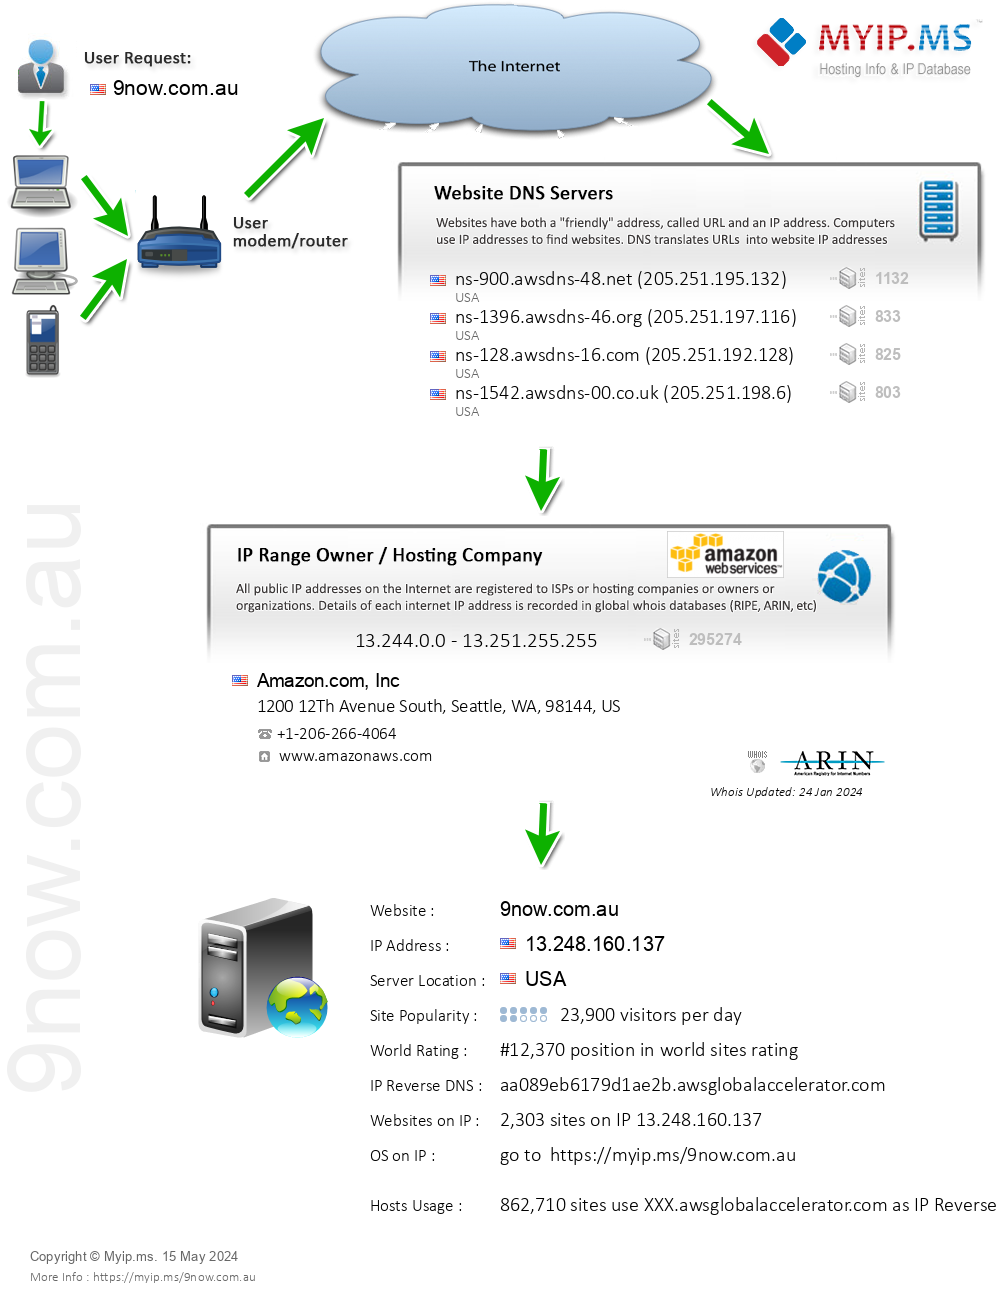 9now.com.au - Website Hosting Visual IP Diagram